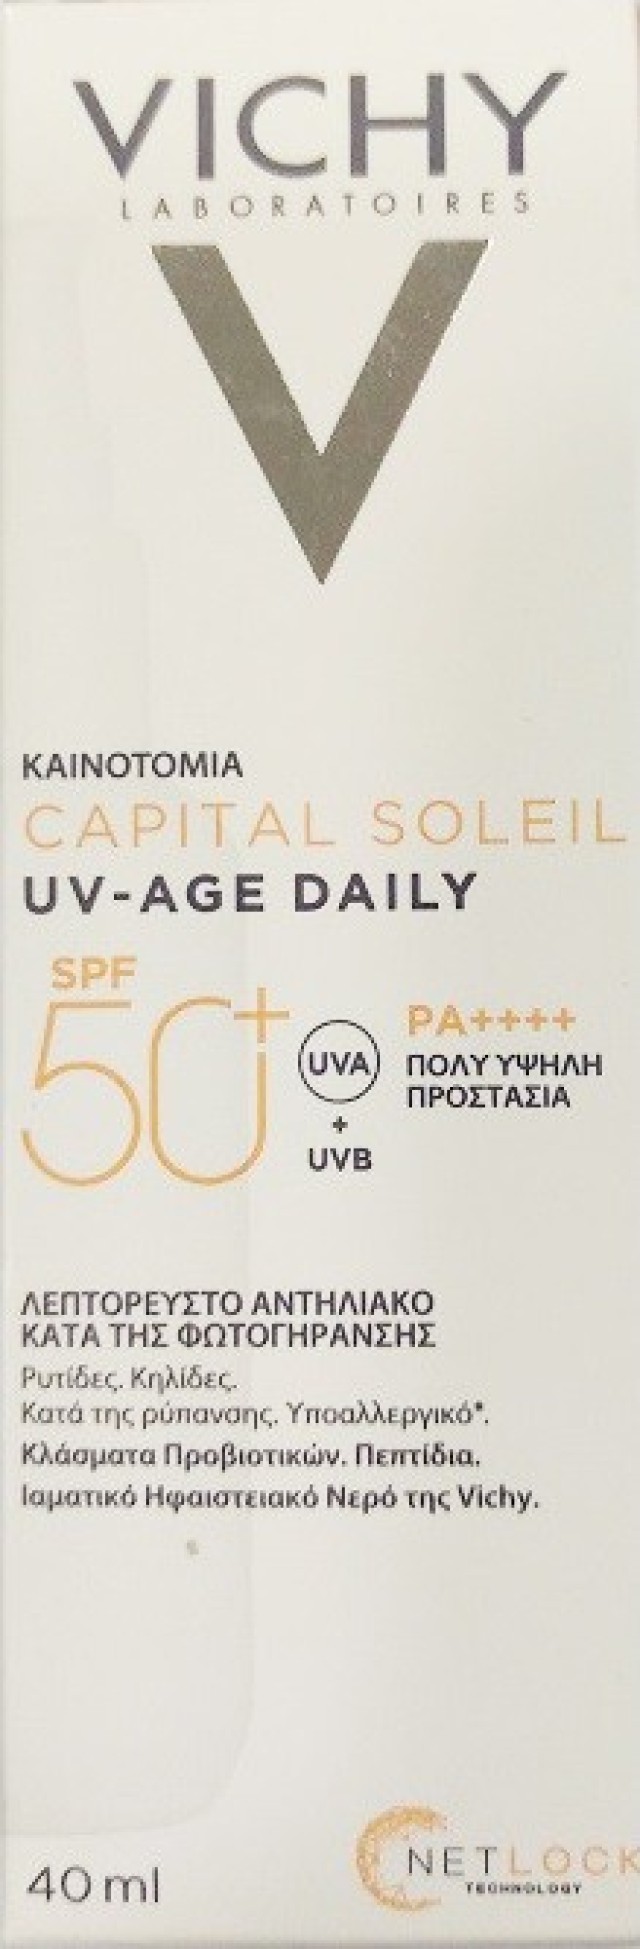 Vichy Capital Soleil Uv-Age Daily spf50 Λεπτόρευστο Αντηλιακό κατά της Φωτογήρανσης 40ml